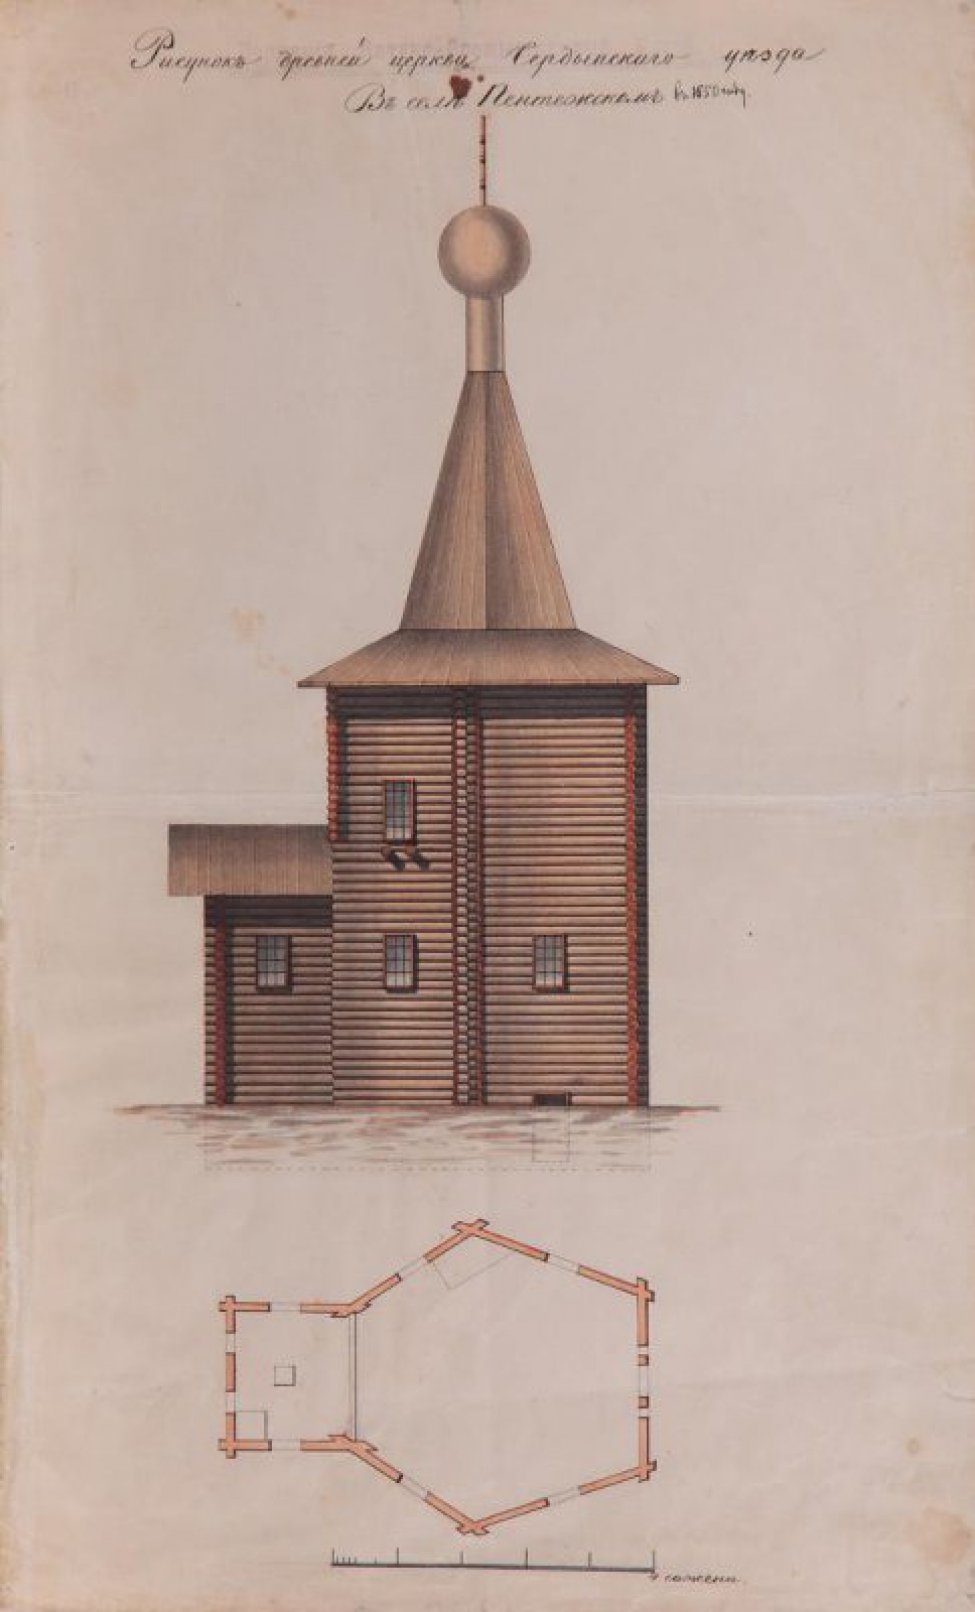 Изображена деревянная церковь с пристроем. Внизу - план в форме шестиугольника с пристроем.